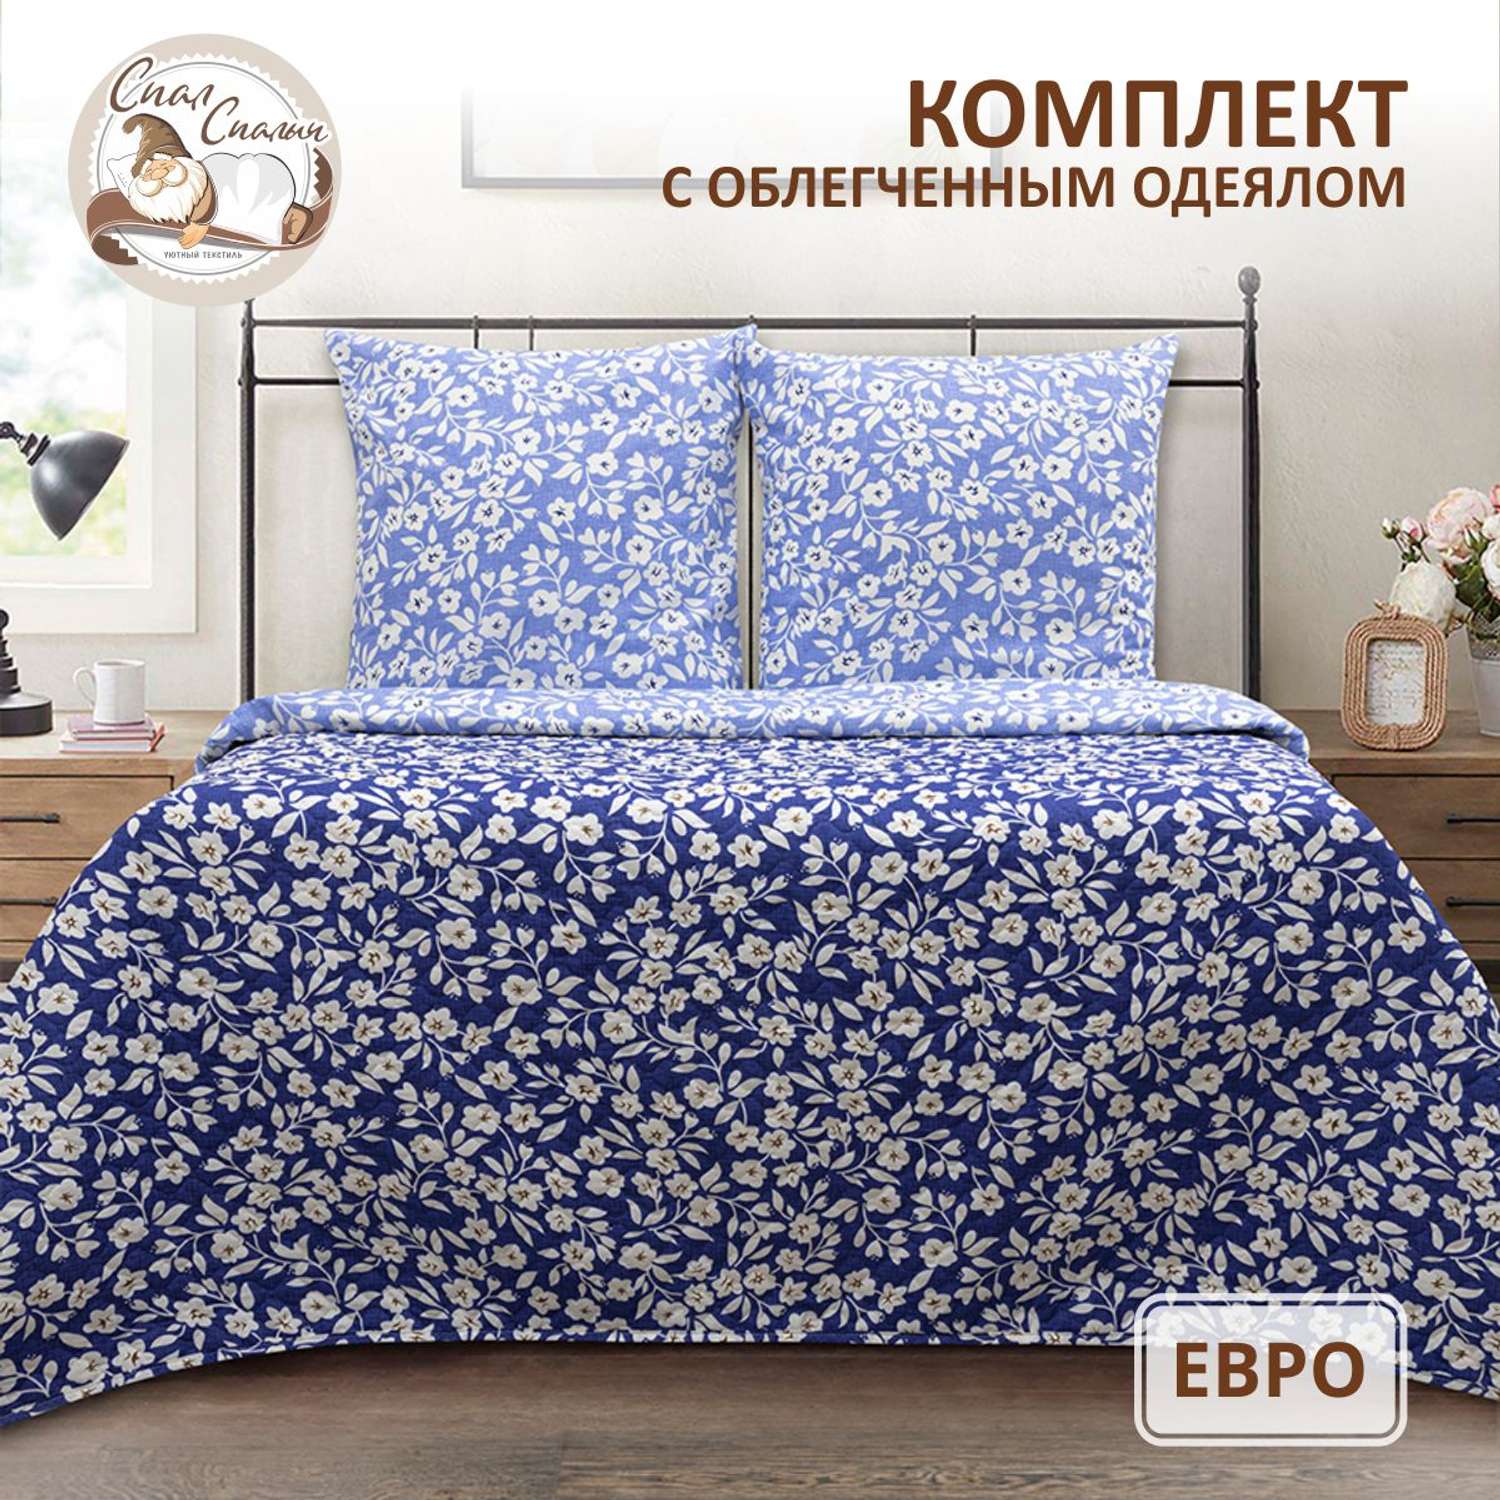 Комплект постельного белья Спал Спалыч универсальный с покрывалом евро рис.6008/6009 - фото 1